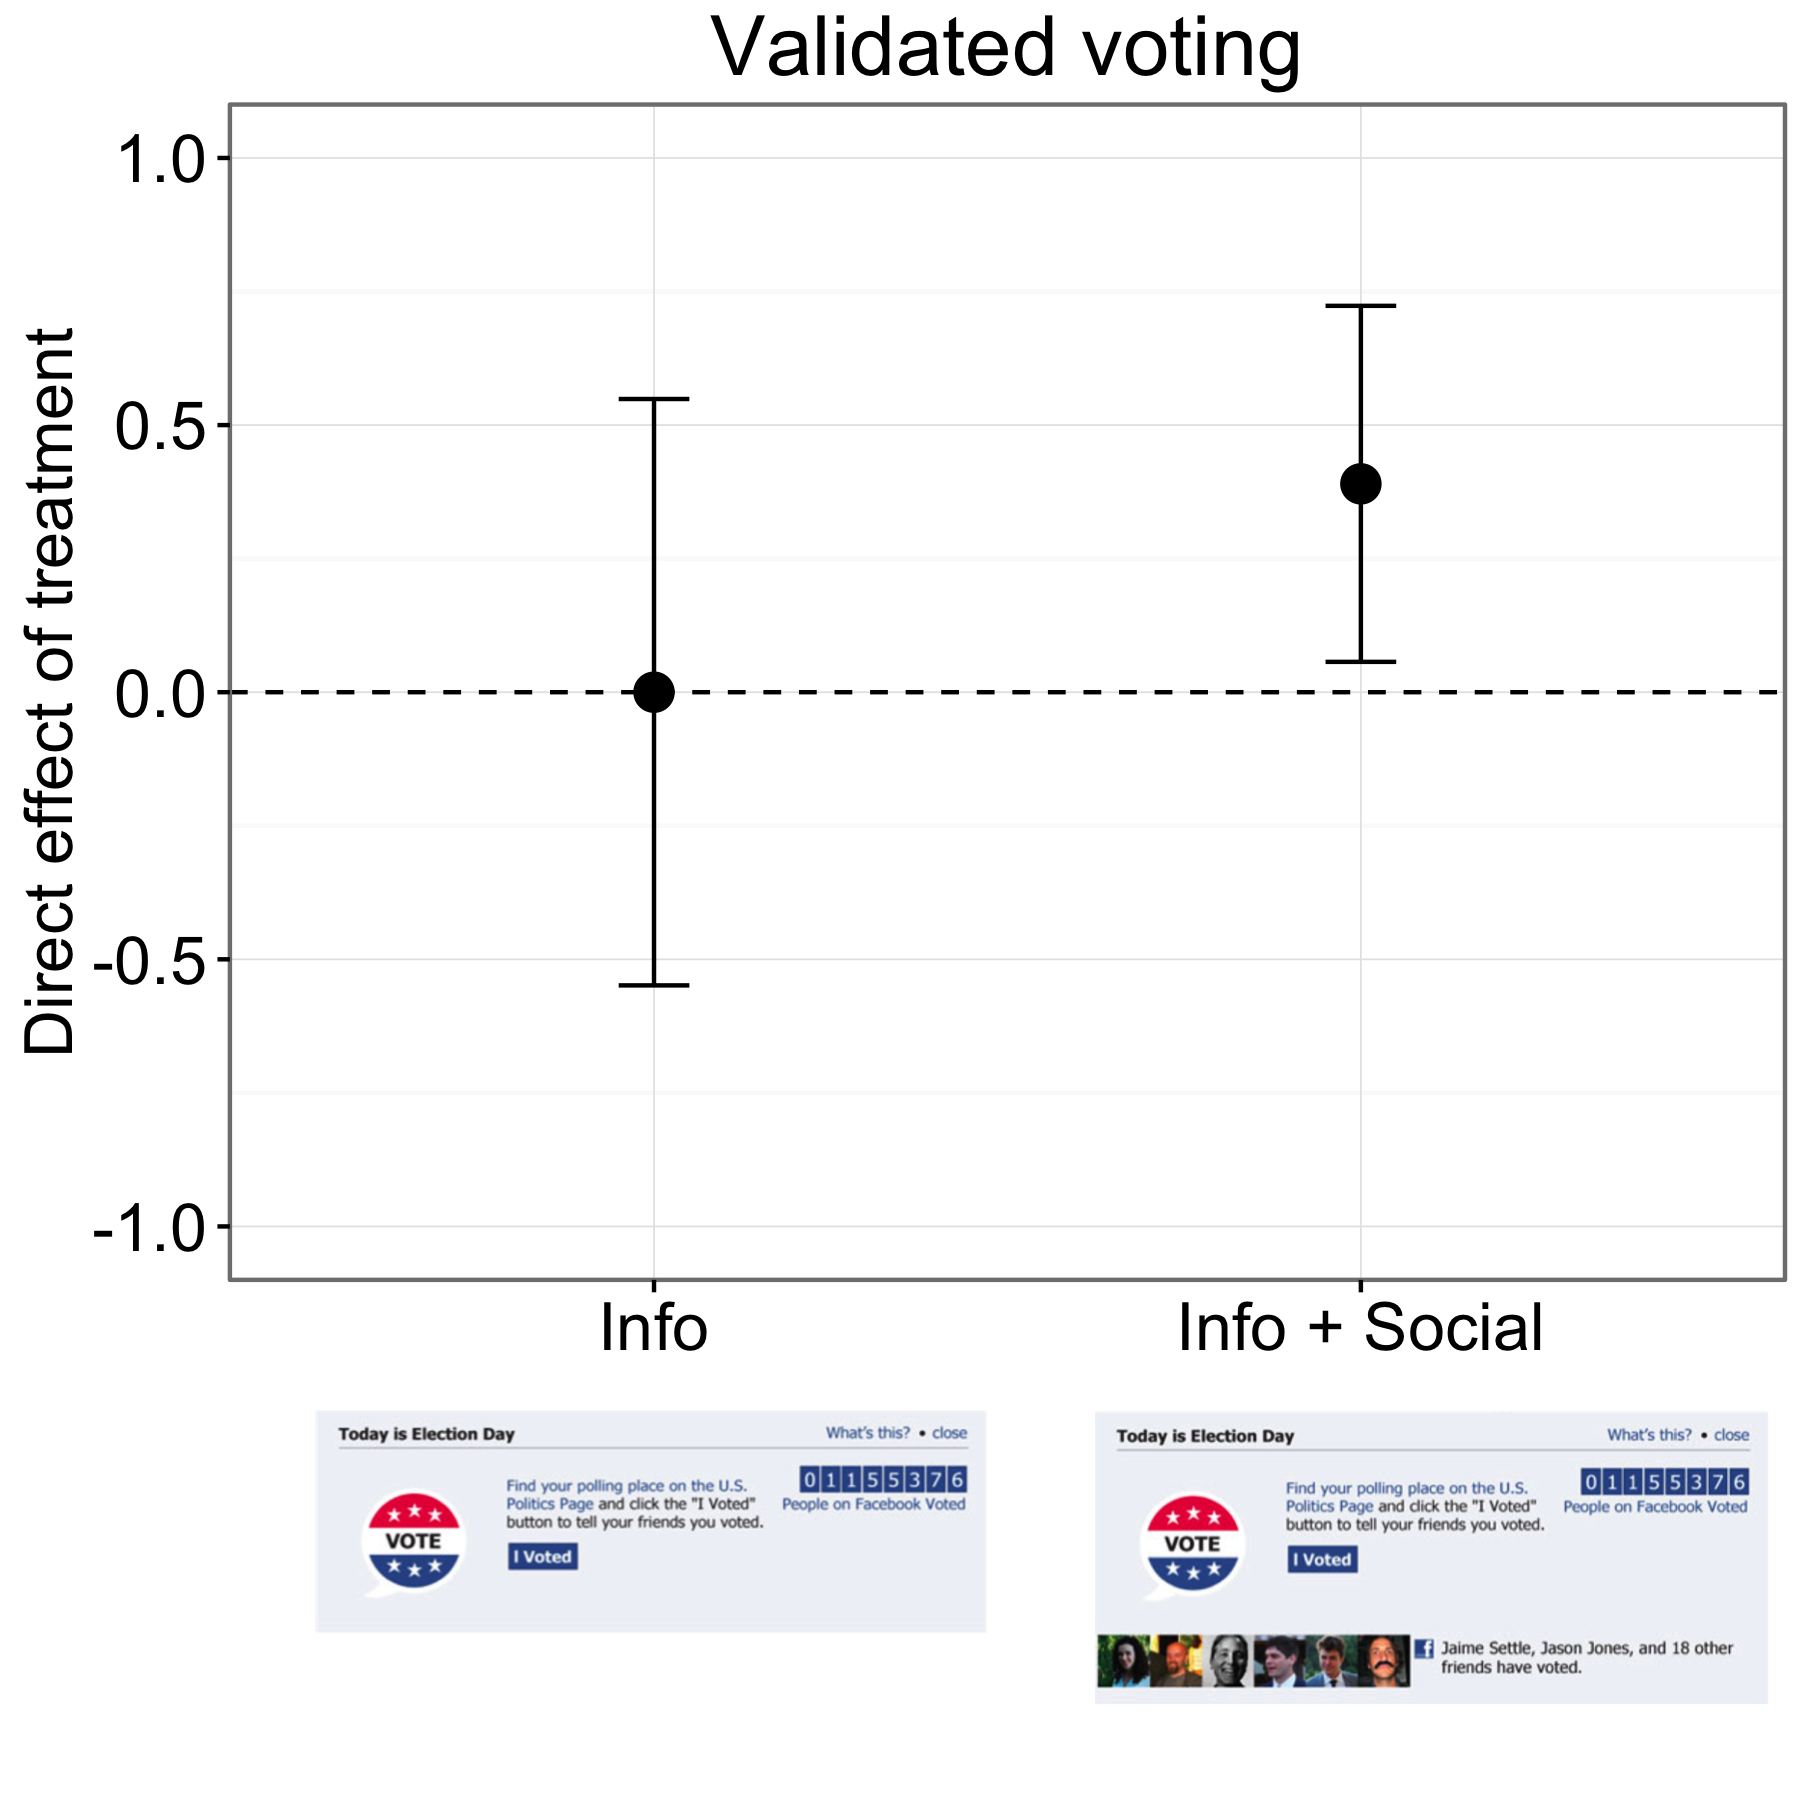 Slika 4.18: Rezultati preizkusa glasovanja na Facebooku (Bond et al., 2012). Udeleženci v Info skupini so glasovali po enaki stopnji kot v kontrolni skupini, ljudje v skupini Info + Social pa so glasovali nekoliko višje. Plošče predstavljajo ocenjene interval zaupanja 95%. Rezultati v grafu so približno za približno šest milijonov udeležencev, ki so se ujemali z glasovalno evidenco. Prilagojeno od Bond et al. (2012), slika 1.